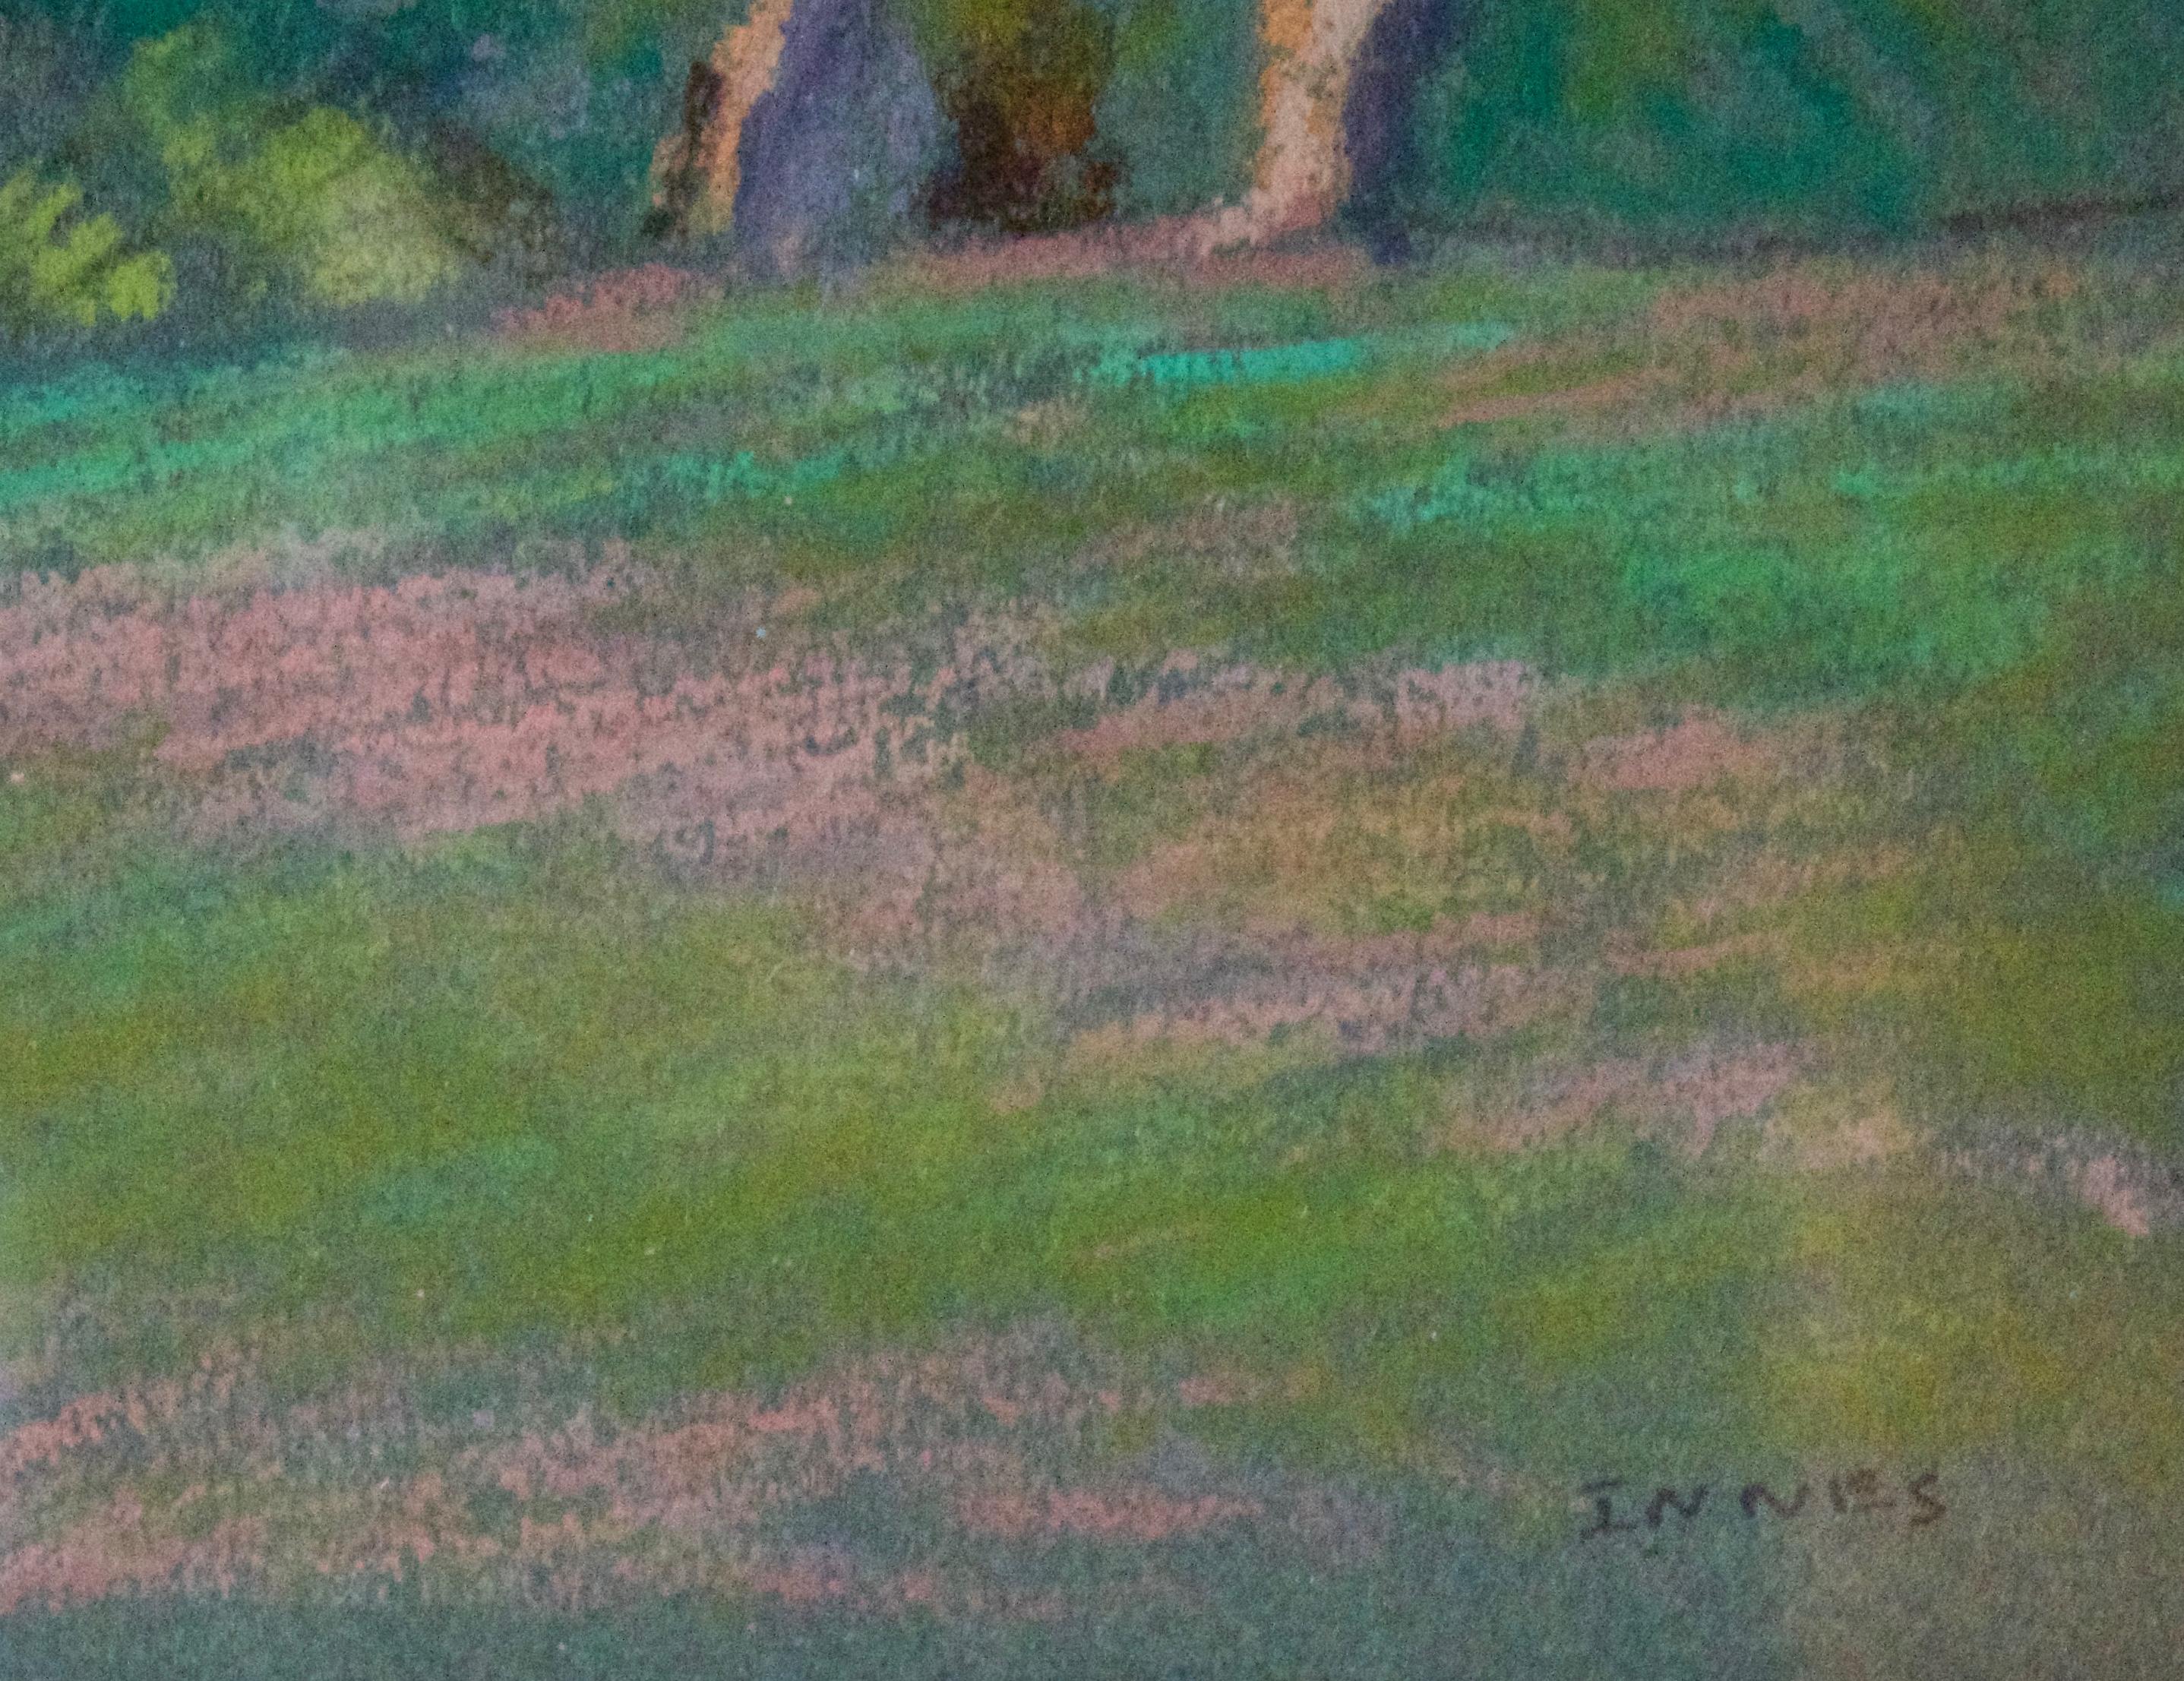 Forest - Paysage impressionniste à l'huile pastel de la fin du 20e siècle par William Innes - Post-impressionnisme Painting par William Henry Innes